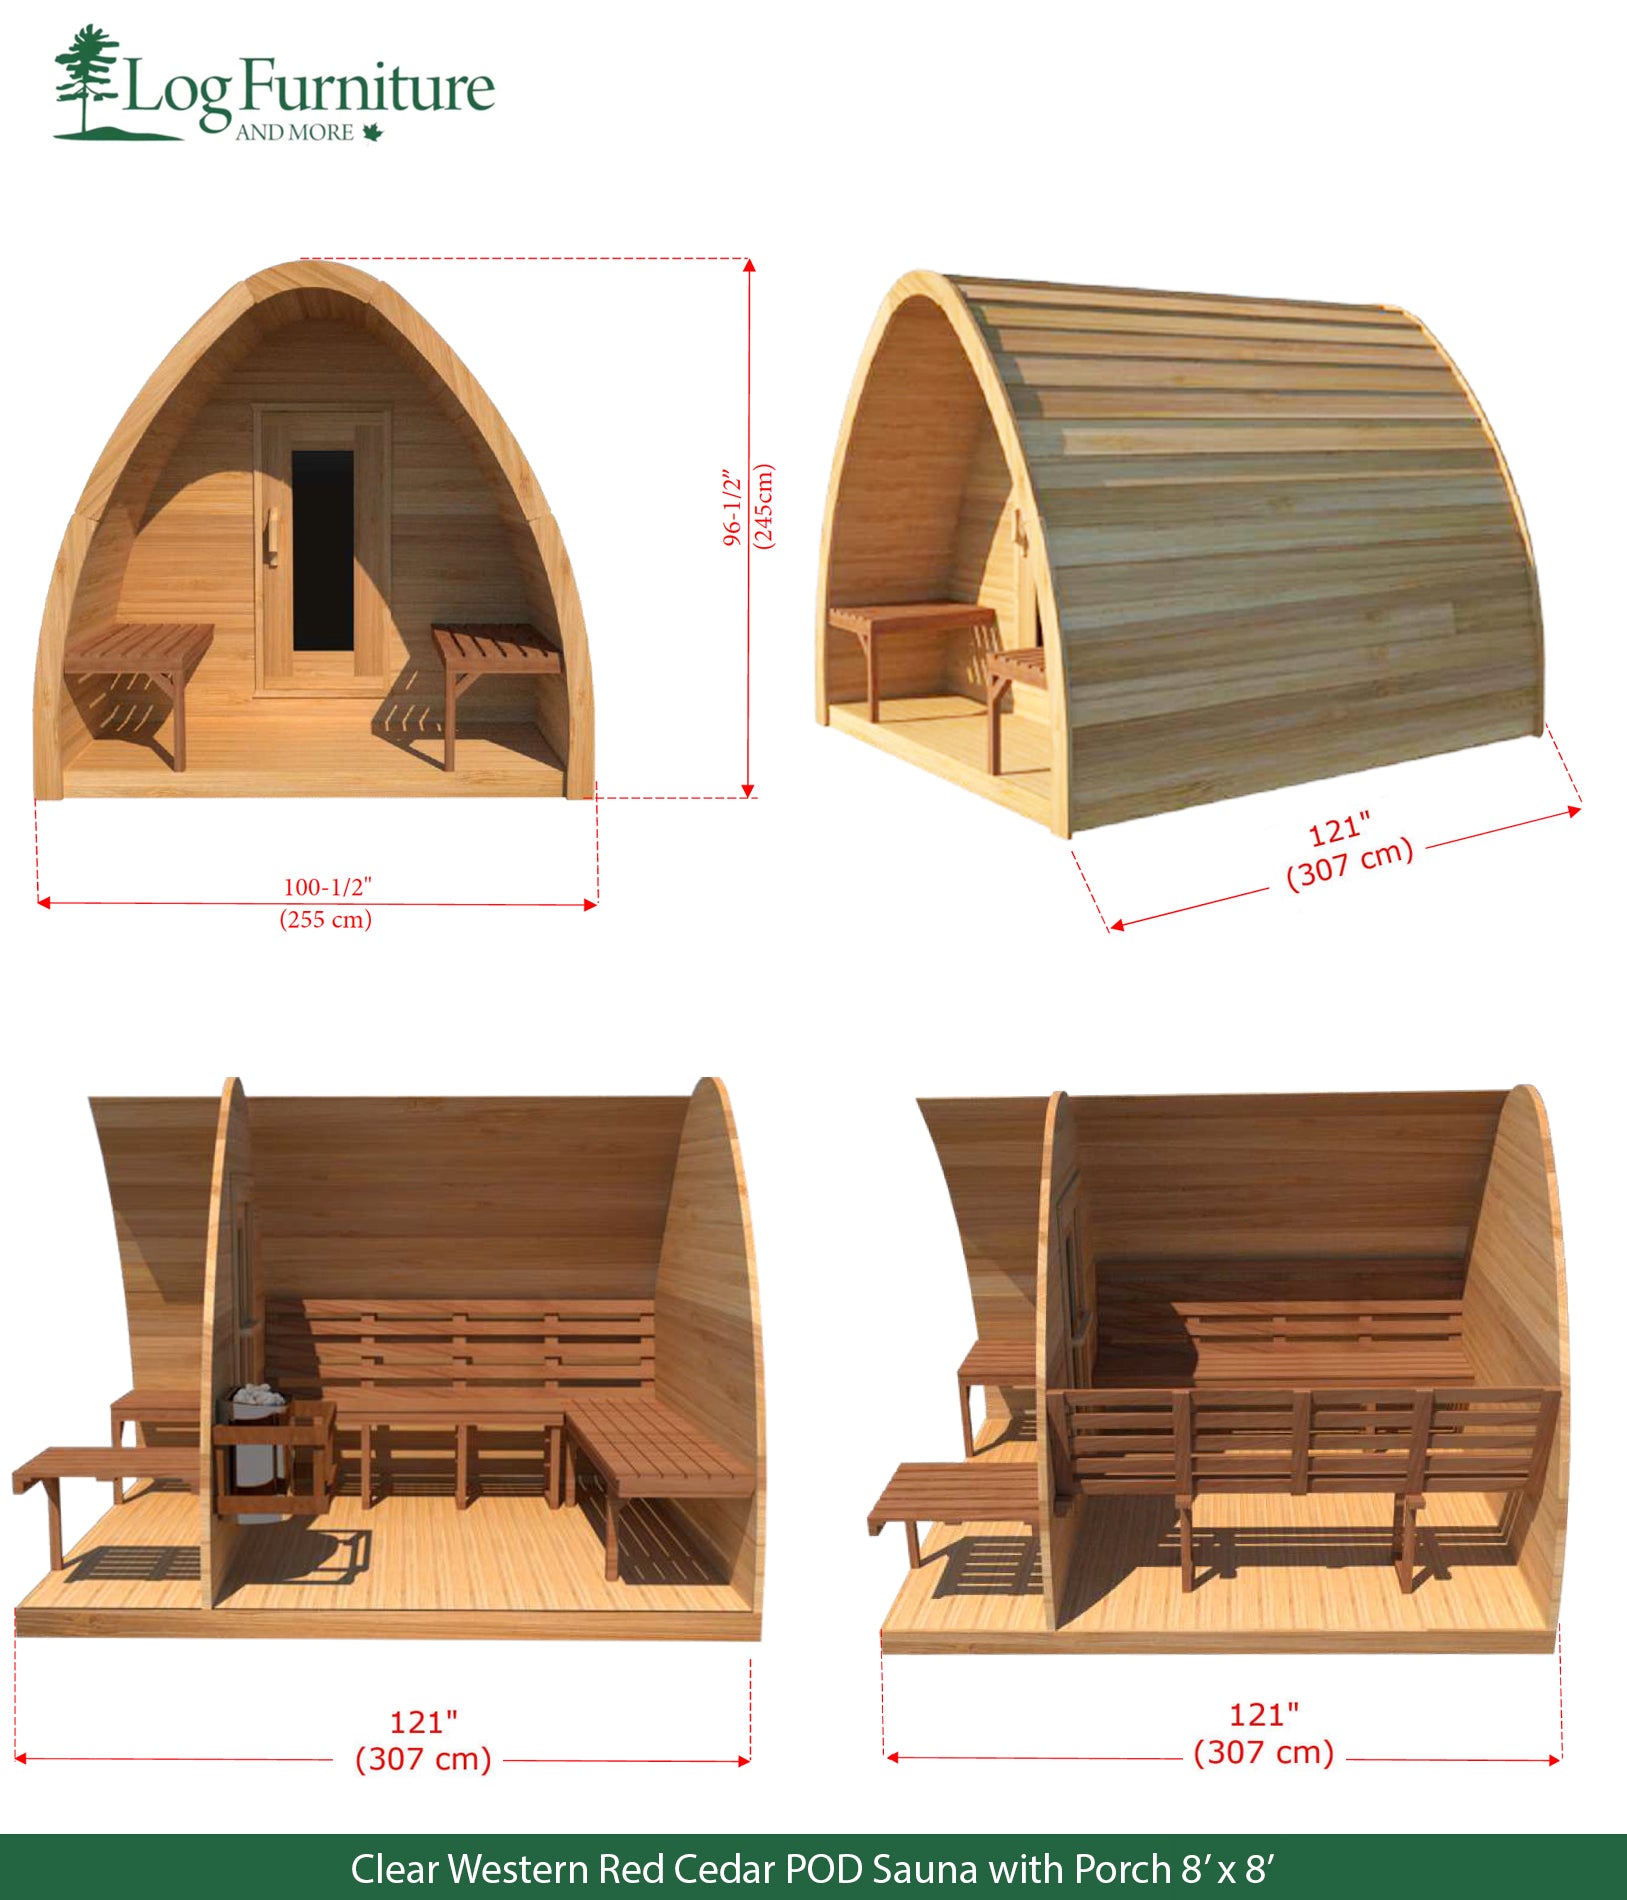 Clear Western Red Cedar POD Sauna with Porch 8' x 8'